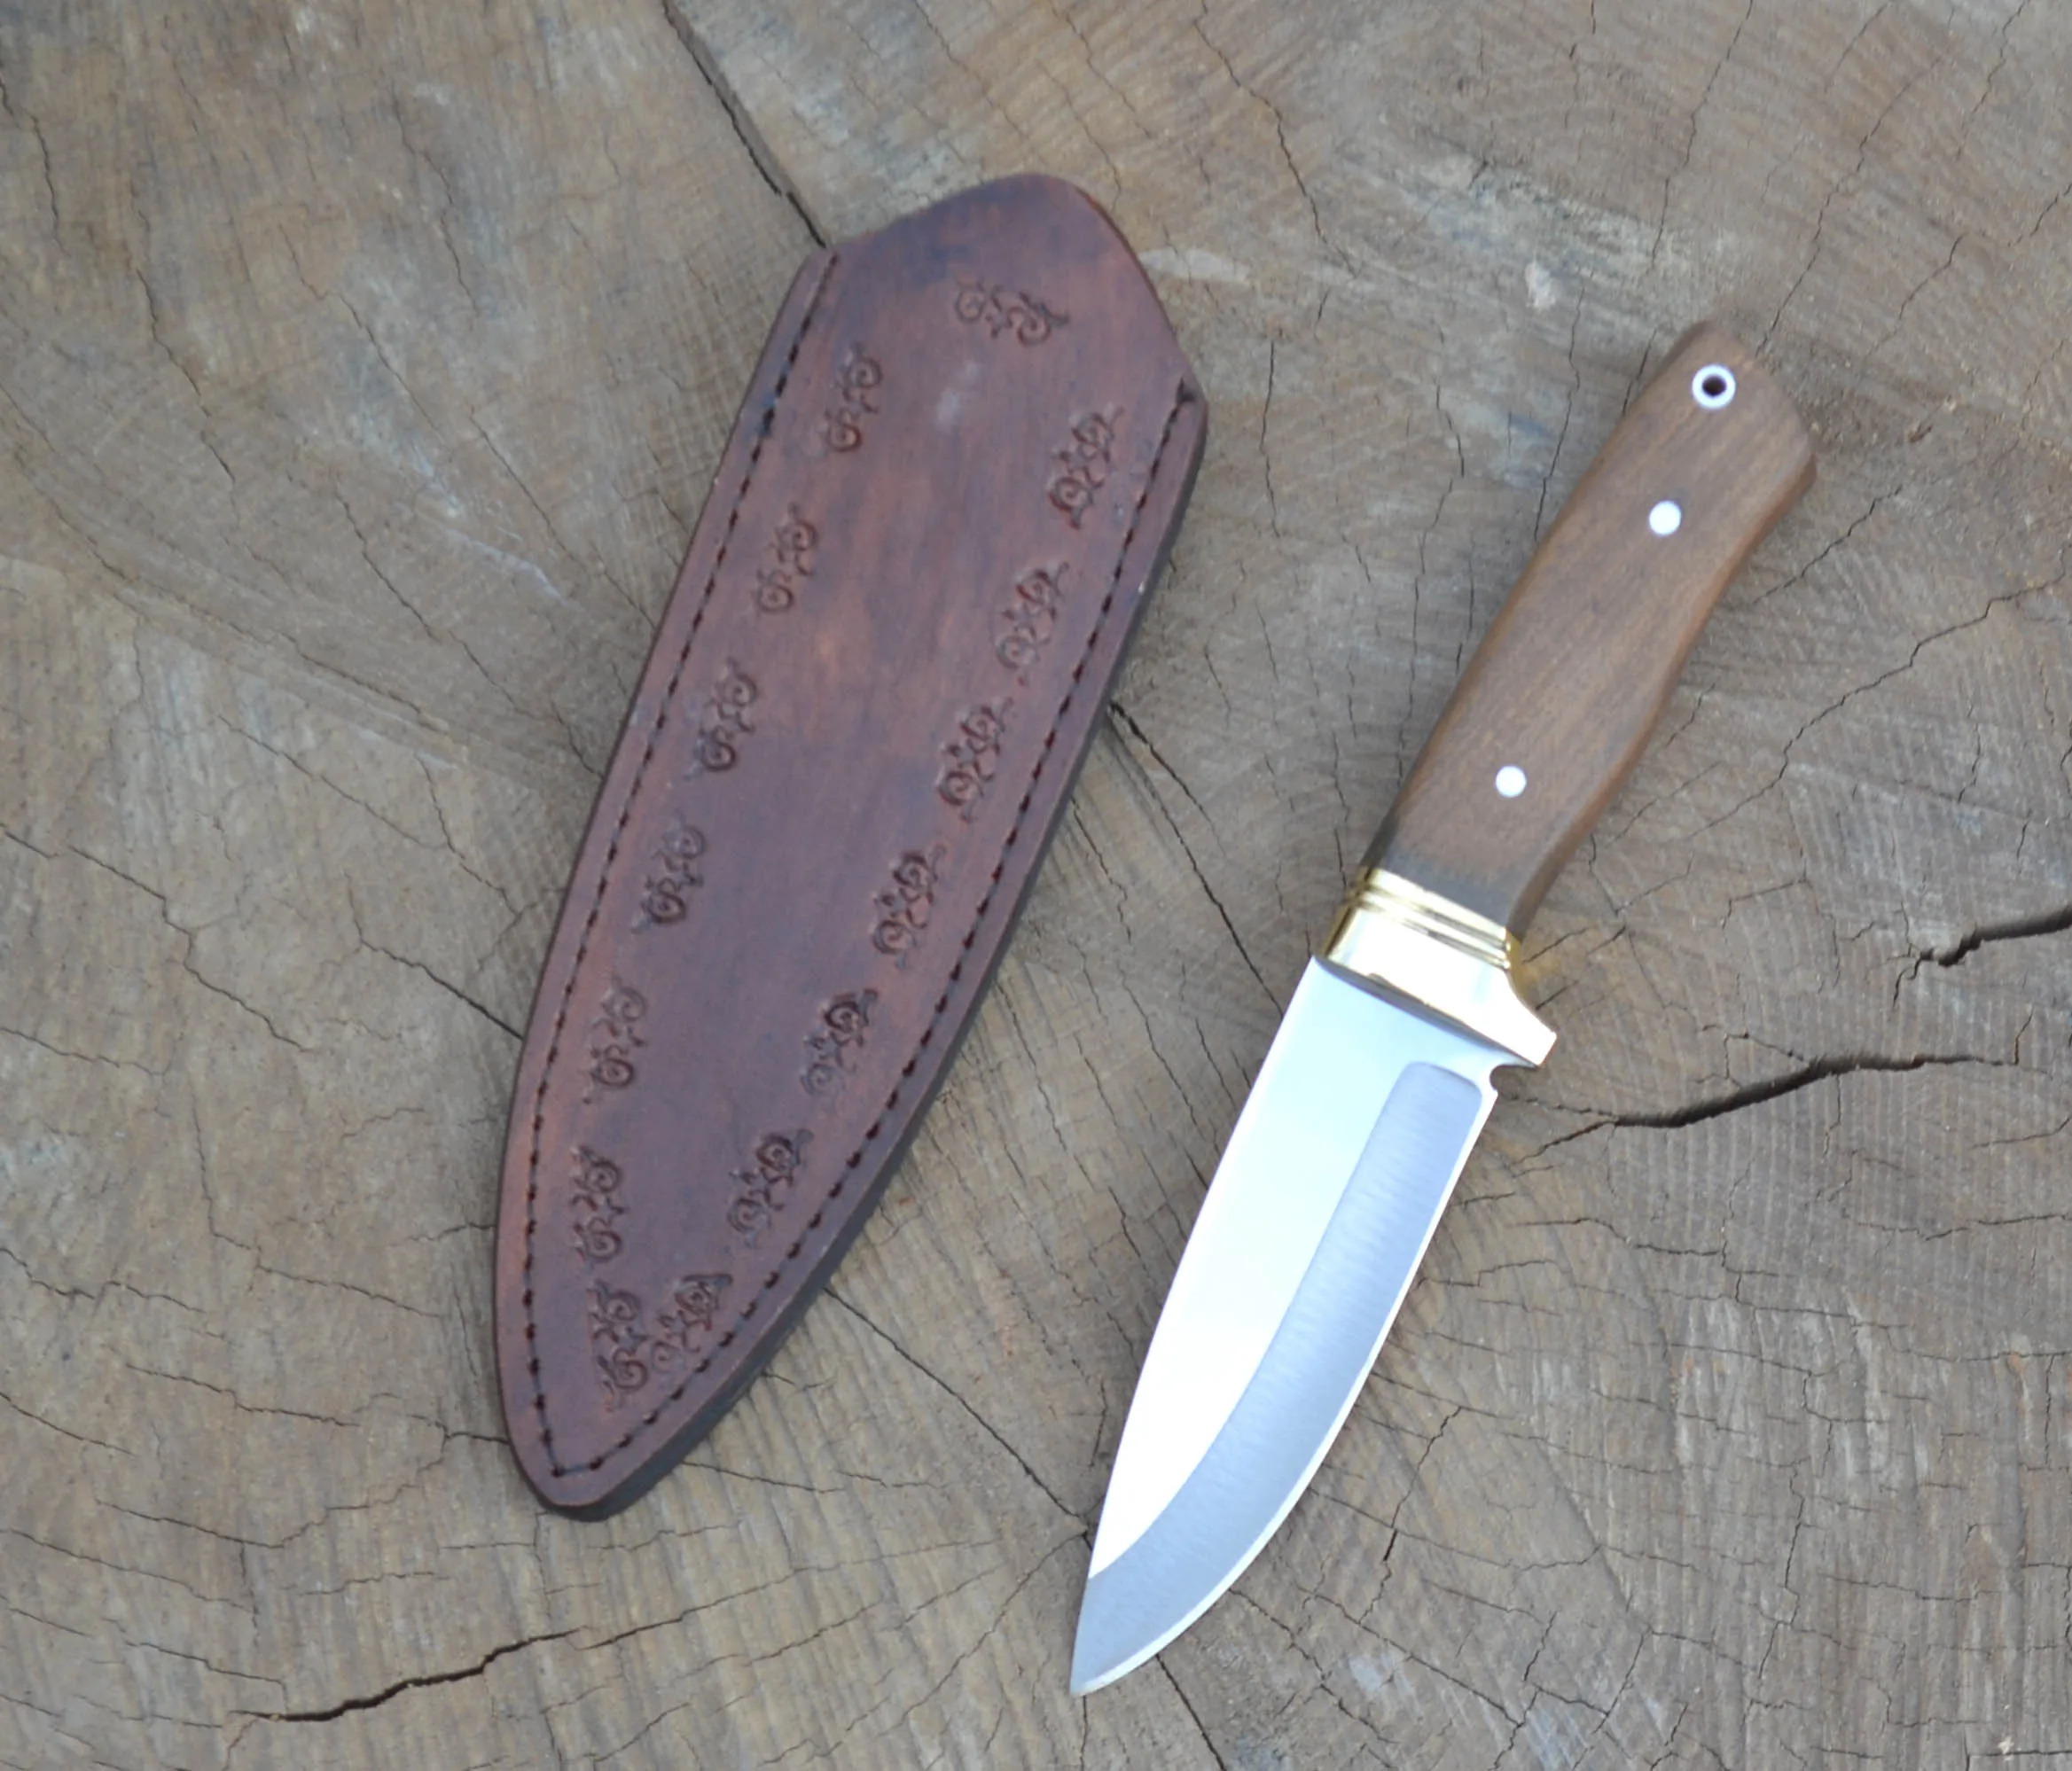 

Bushcraft bıçak, keskin , paslanmaz çelik bıçak,tek parça bıçak,yüksek kaliteli, doğa bıçak, garantili, türk bıçak HGBSH1T